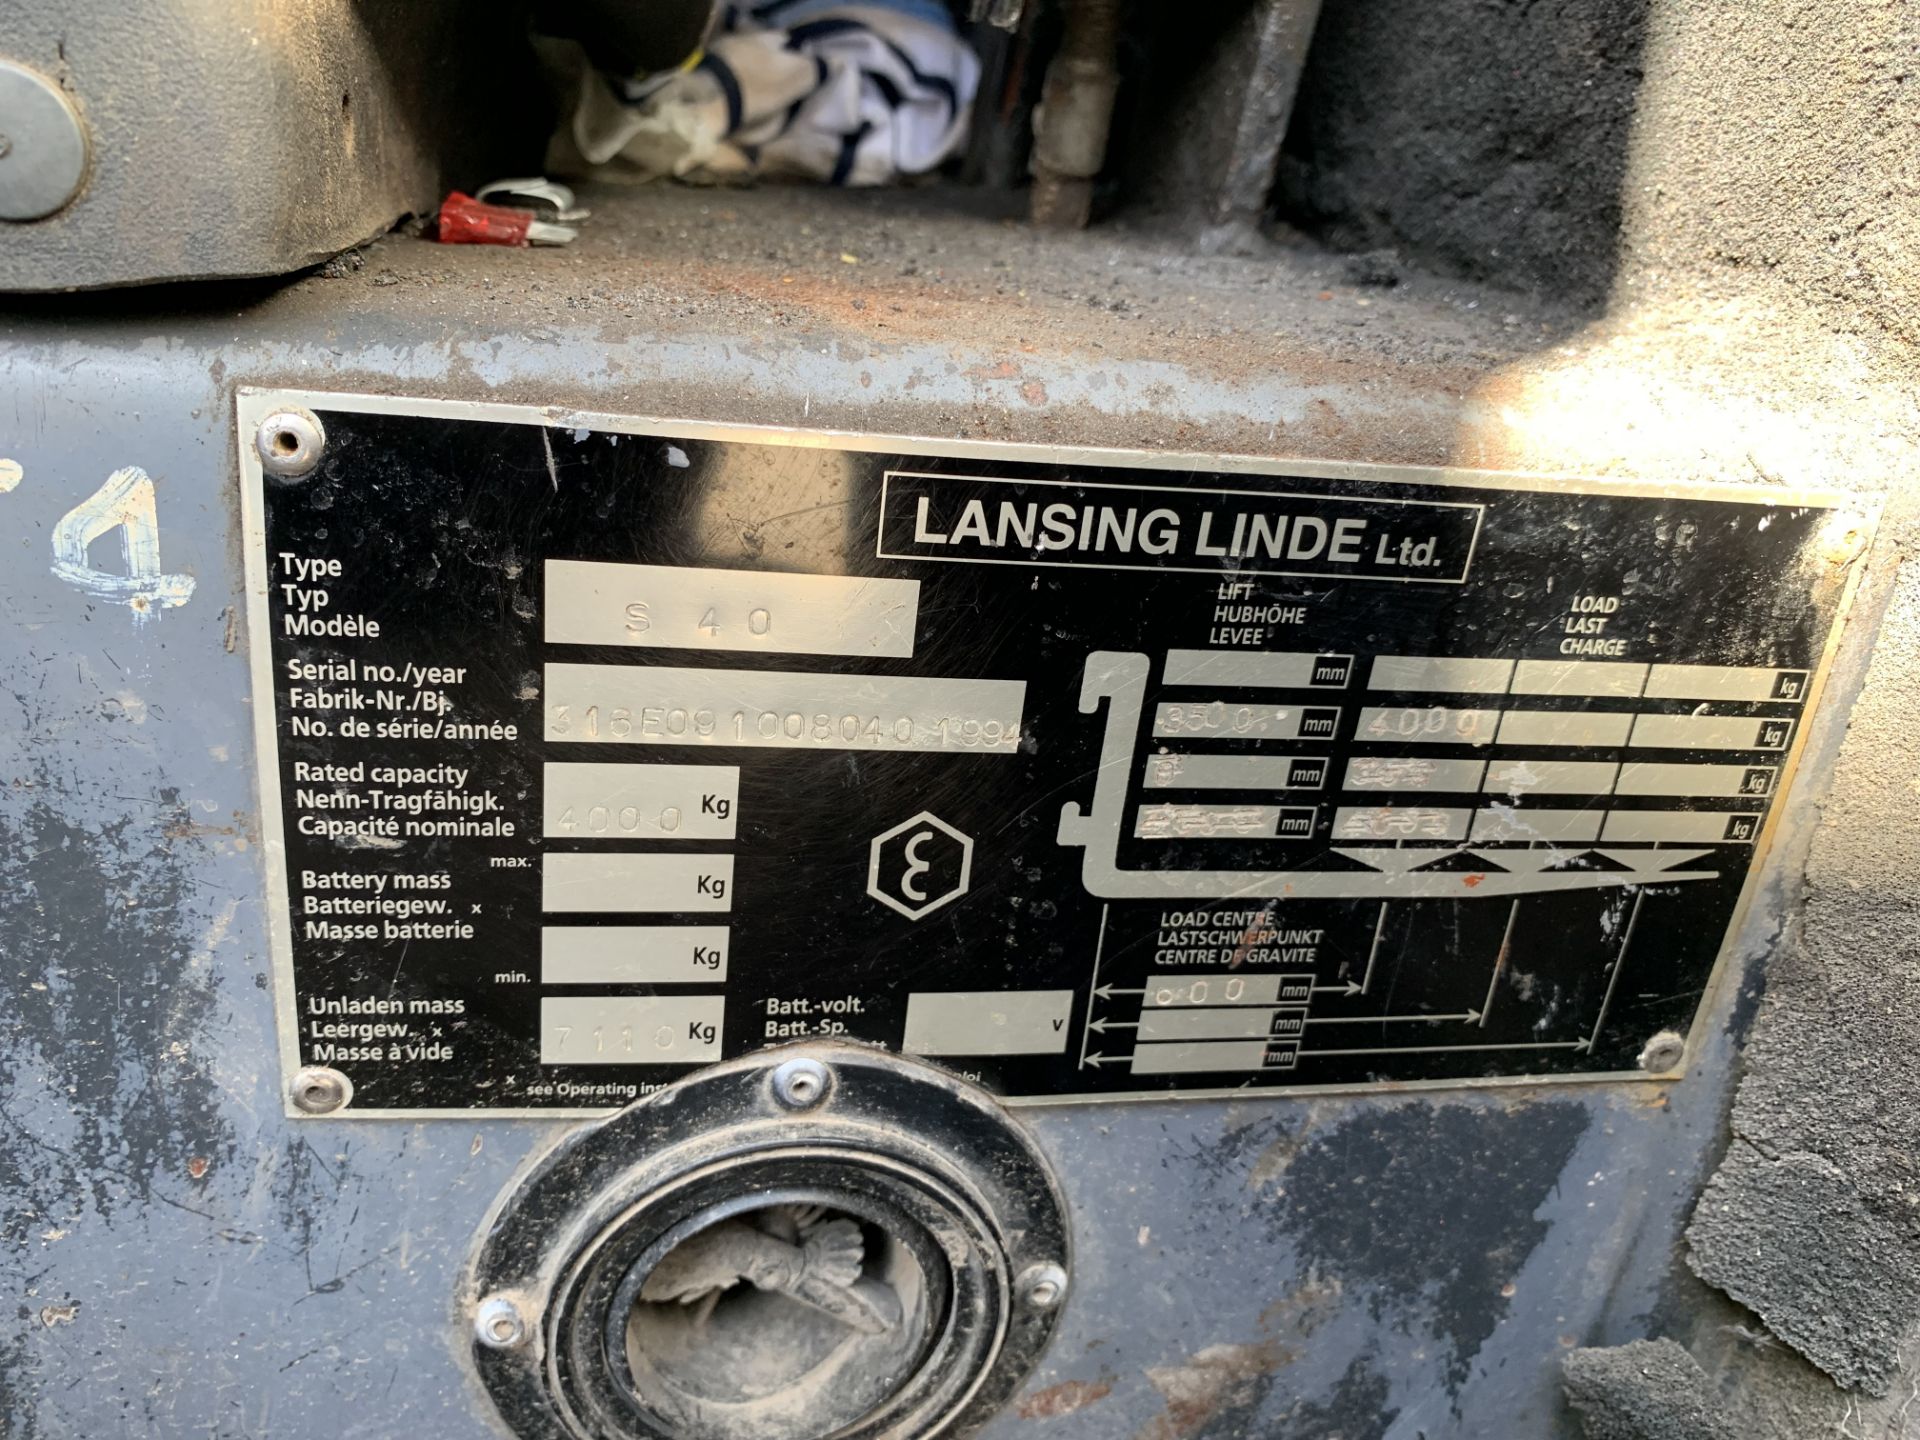 Lansing Linde S40 Side Loading 4000KG Load Forklift Truck (15,200 hrs) - Image 2 of 5